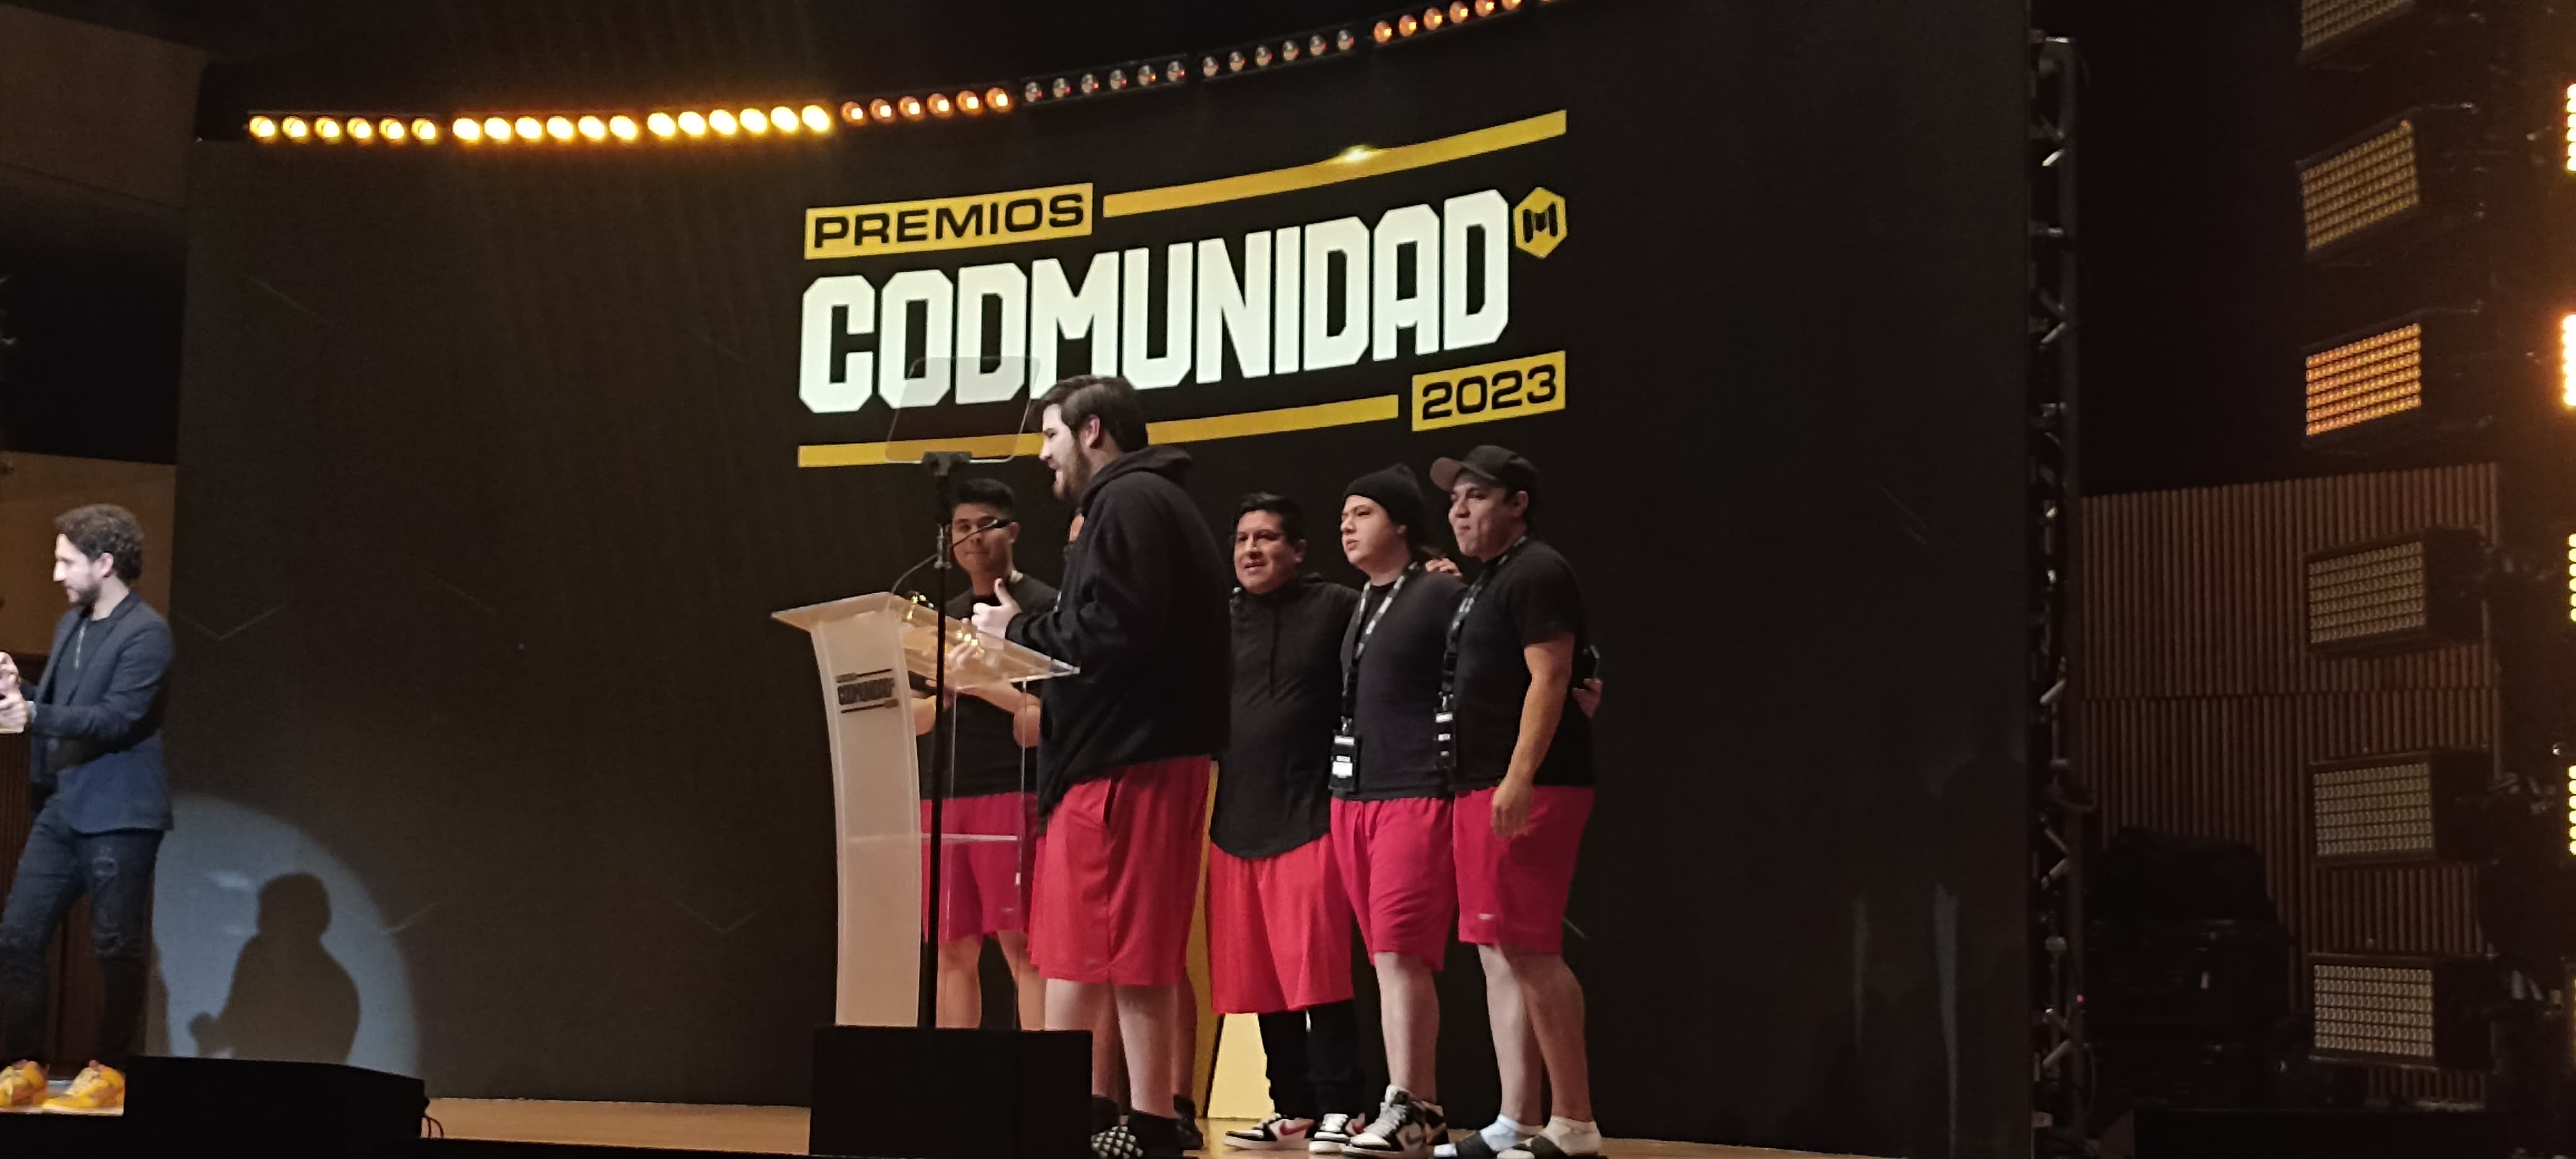 Premios CODMUNIDAD 2023 en Ciudad de México 39